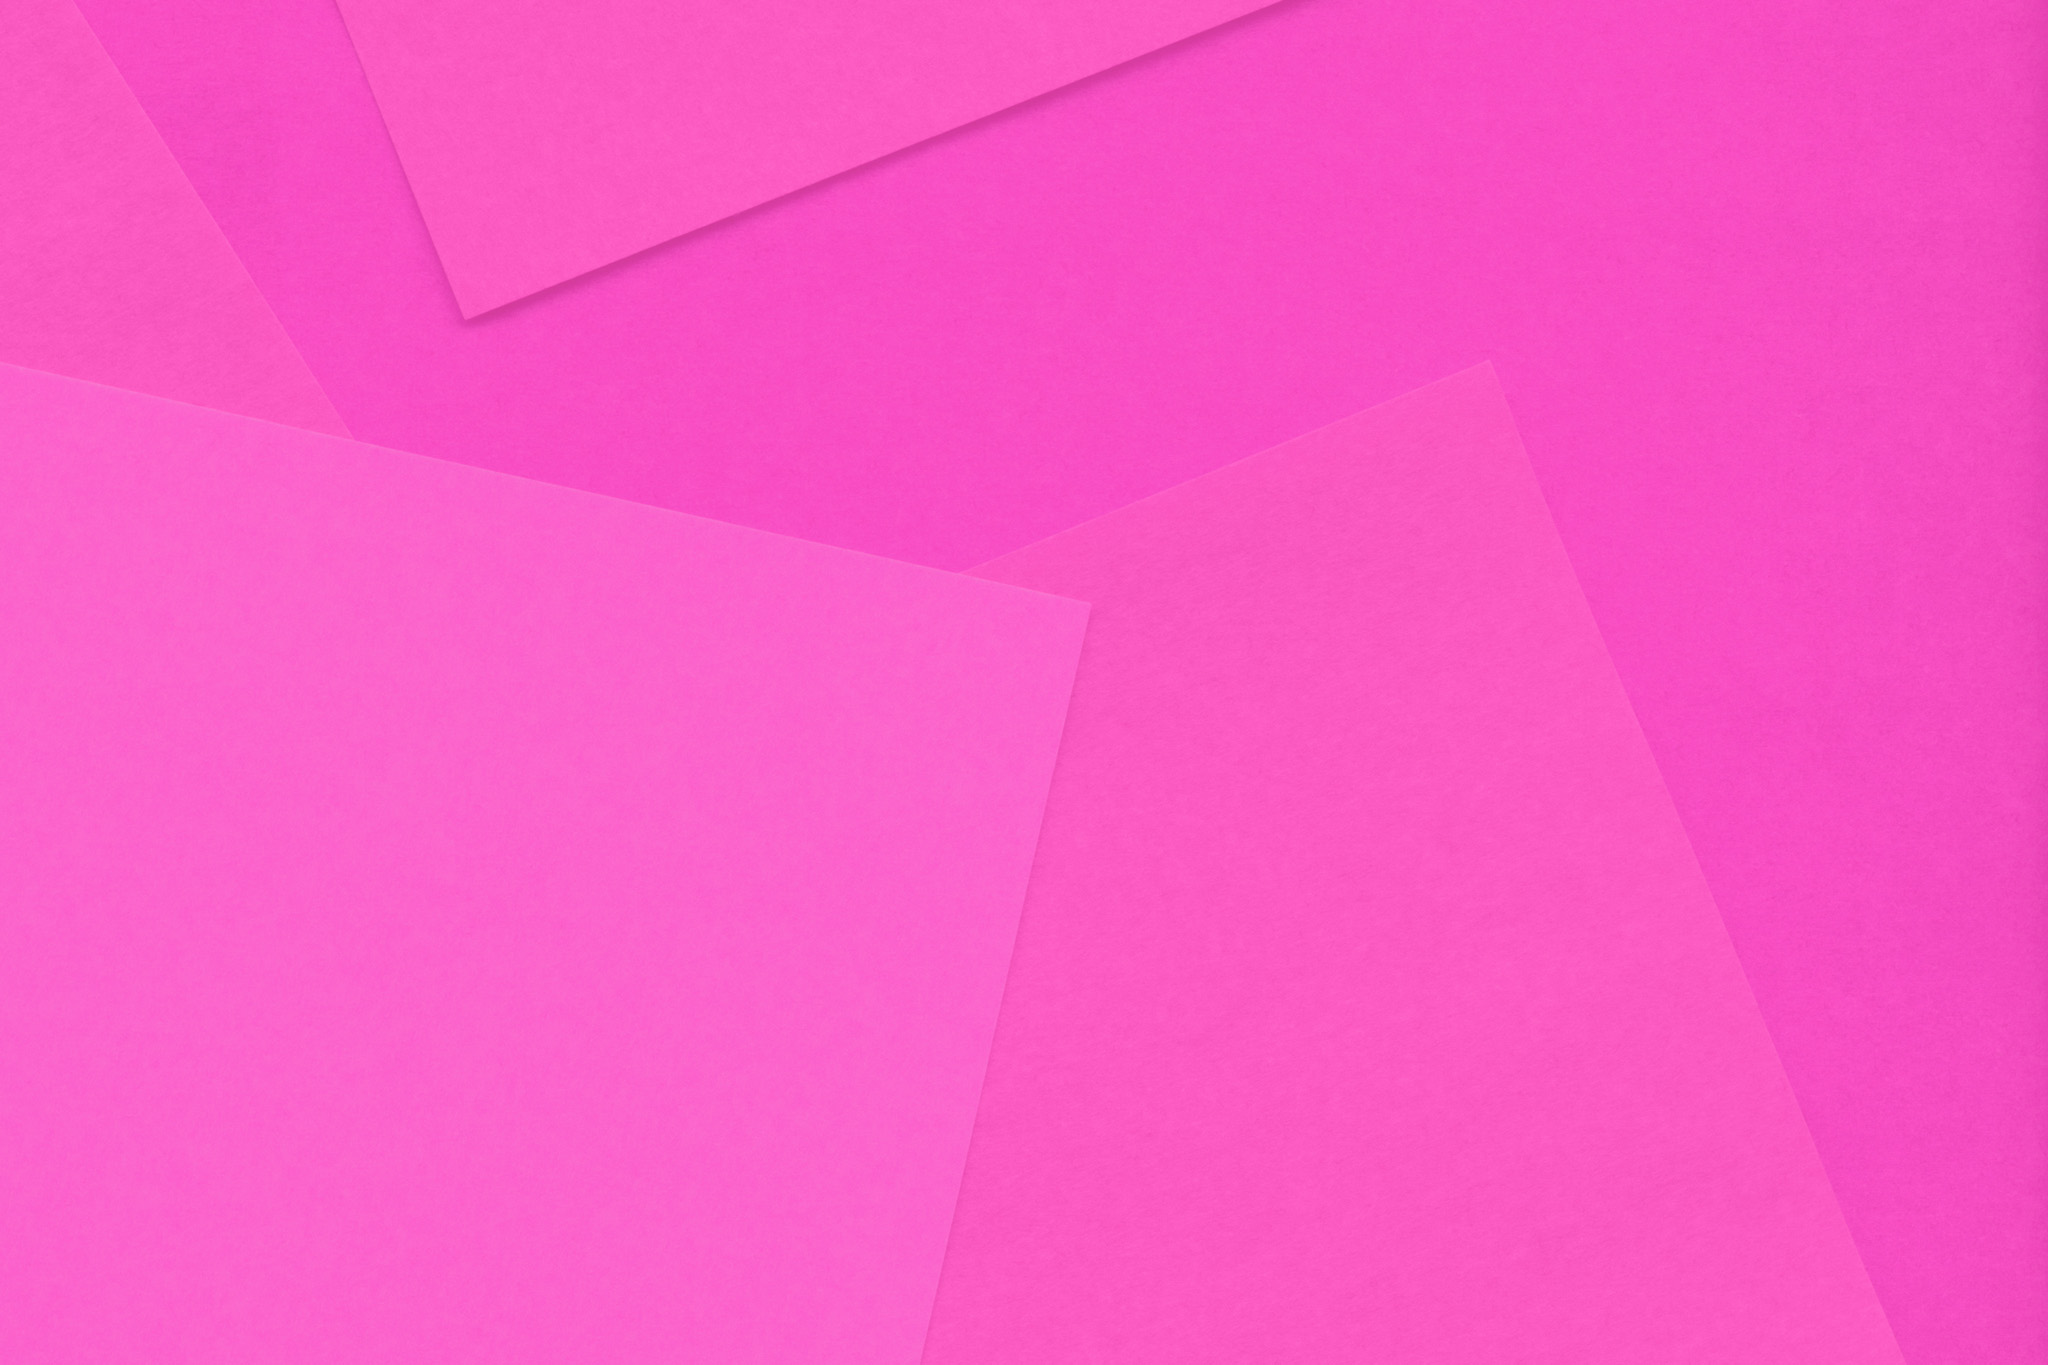 シンプルなピンクの無地壁紙 の画像素材を無料ダウンロード 1 フリー素材 Beiz Images